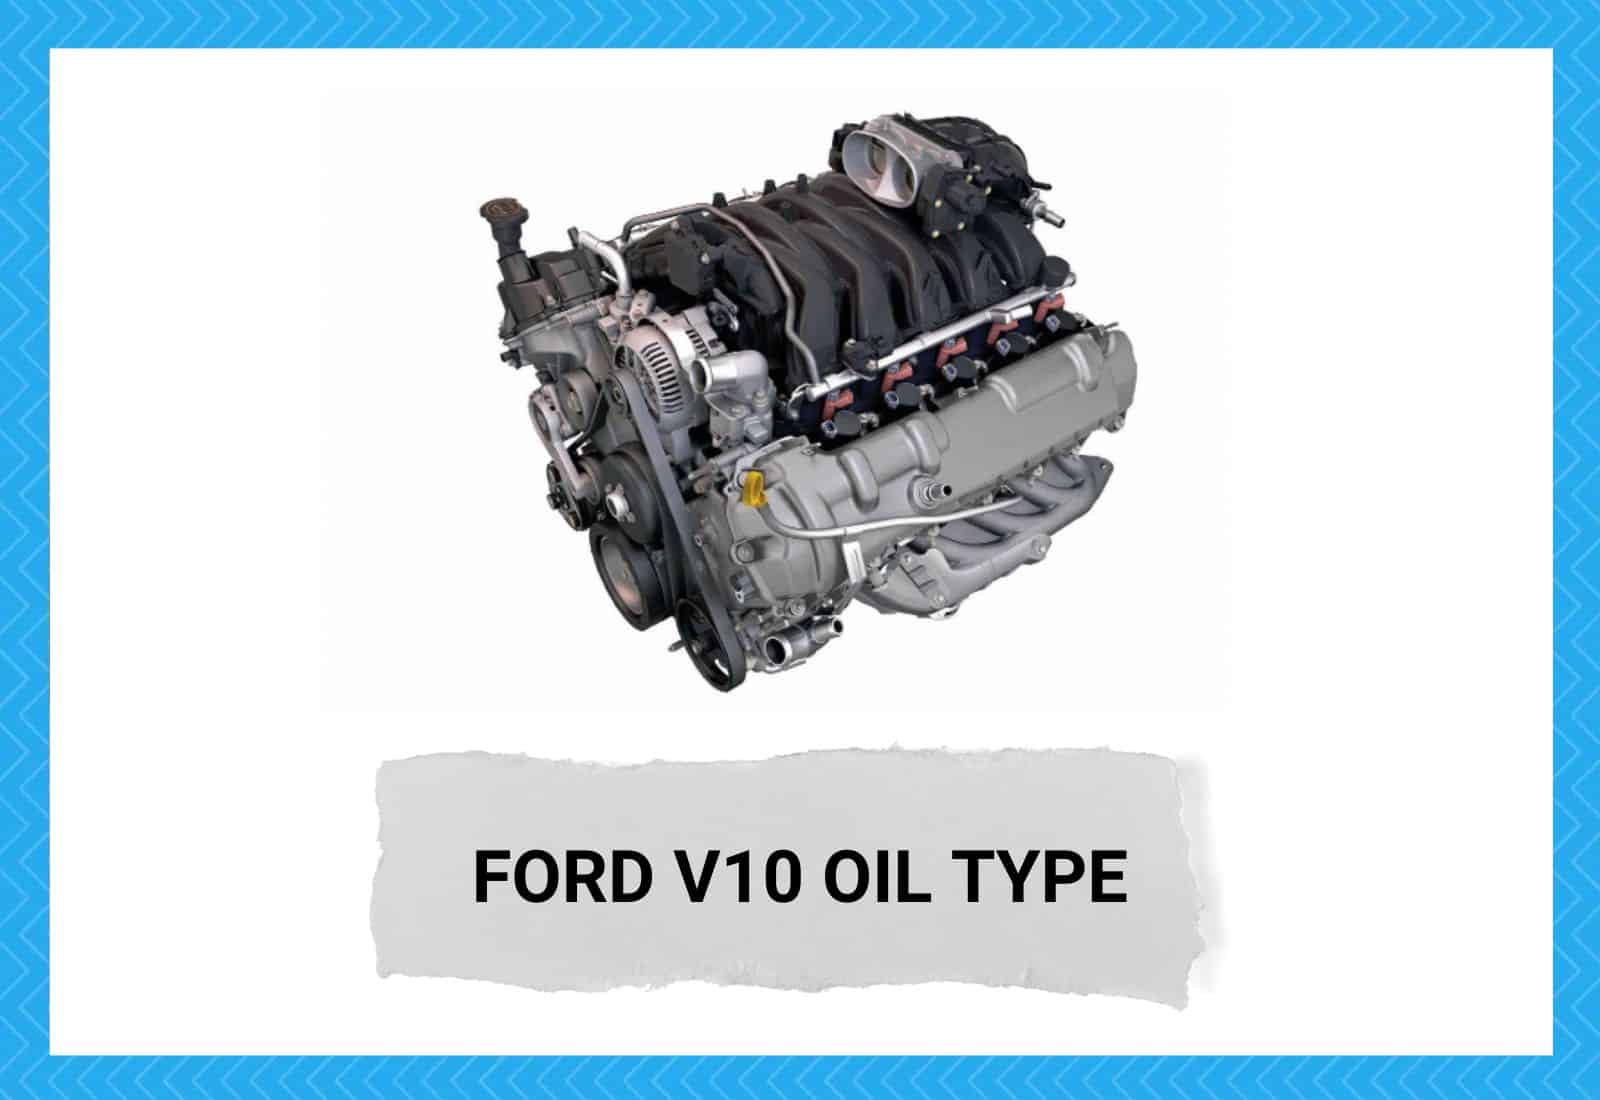 Ford V10 Oil Type